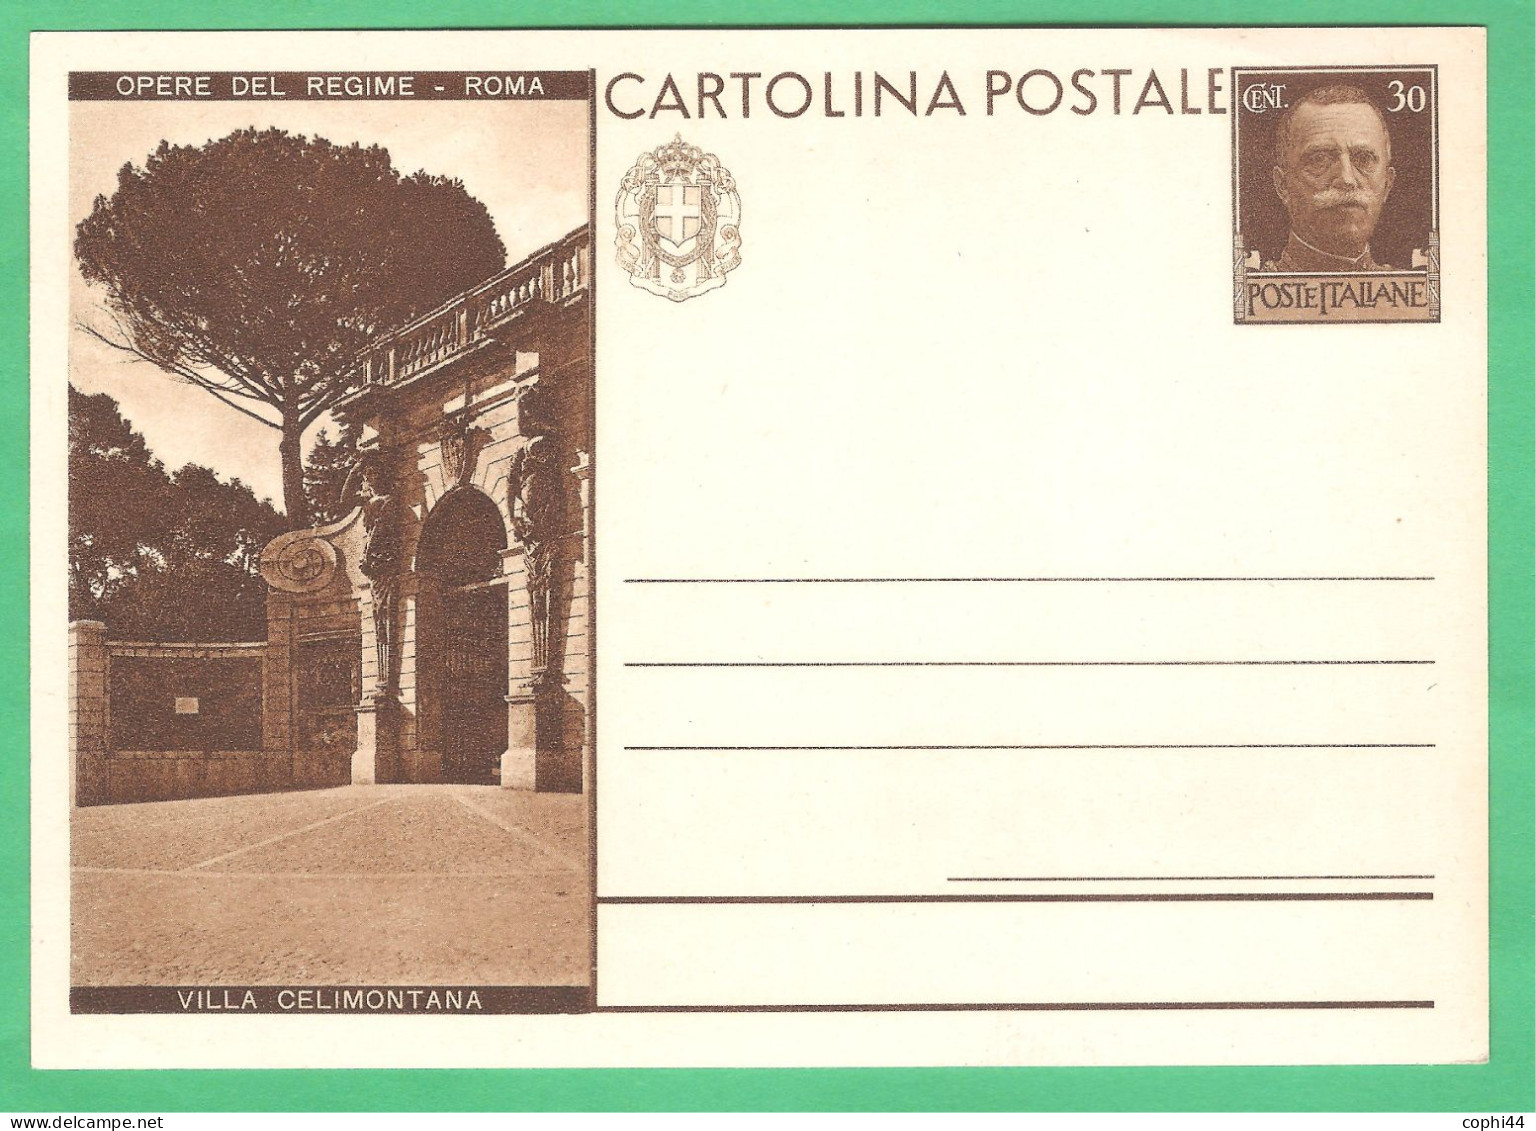 REGNO D'ITALIA 1931 CARTOLINA POSTALE VEIII OPERE DEL REGIME VILLA CELIMONTANA 30 C Bruno (FILAGRANO C70-24) NUOVA - Entero Postal